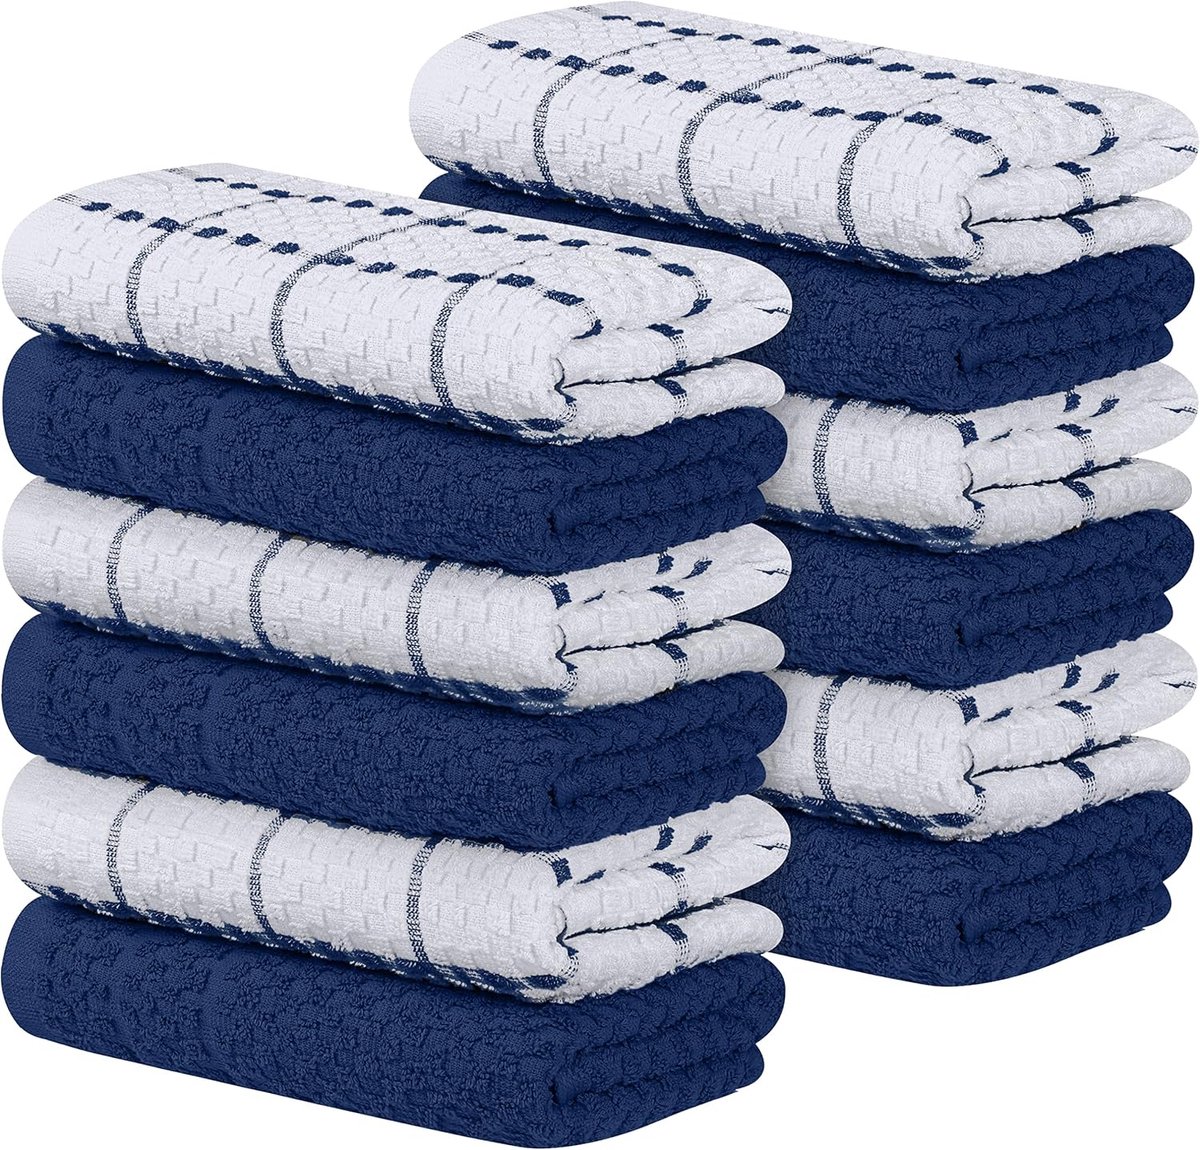 12 Keuken Handdoeken Set - 38 x 64 cm - 100% Ring Gesponnen Katoenen Superzacht en Absorberend Schotelantennes, Theedoeken en Barkrukken Handdoeken (marine blauw en wit)